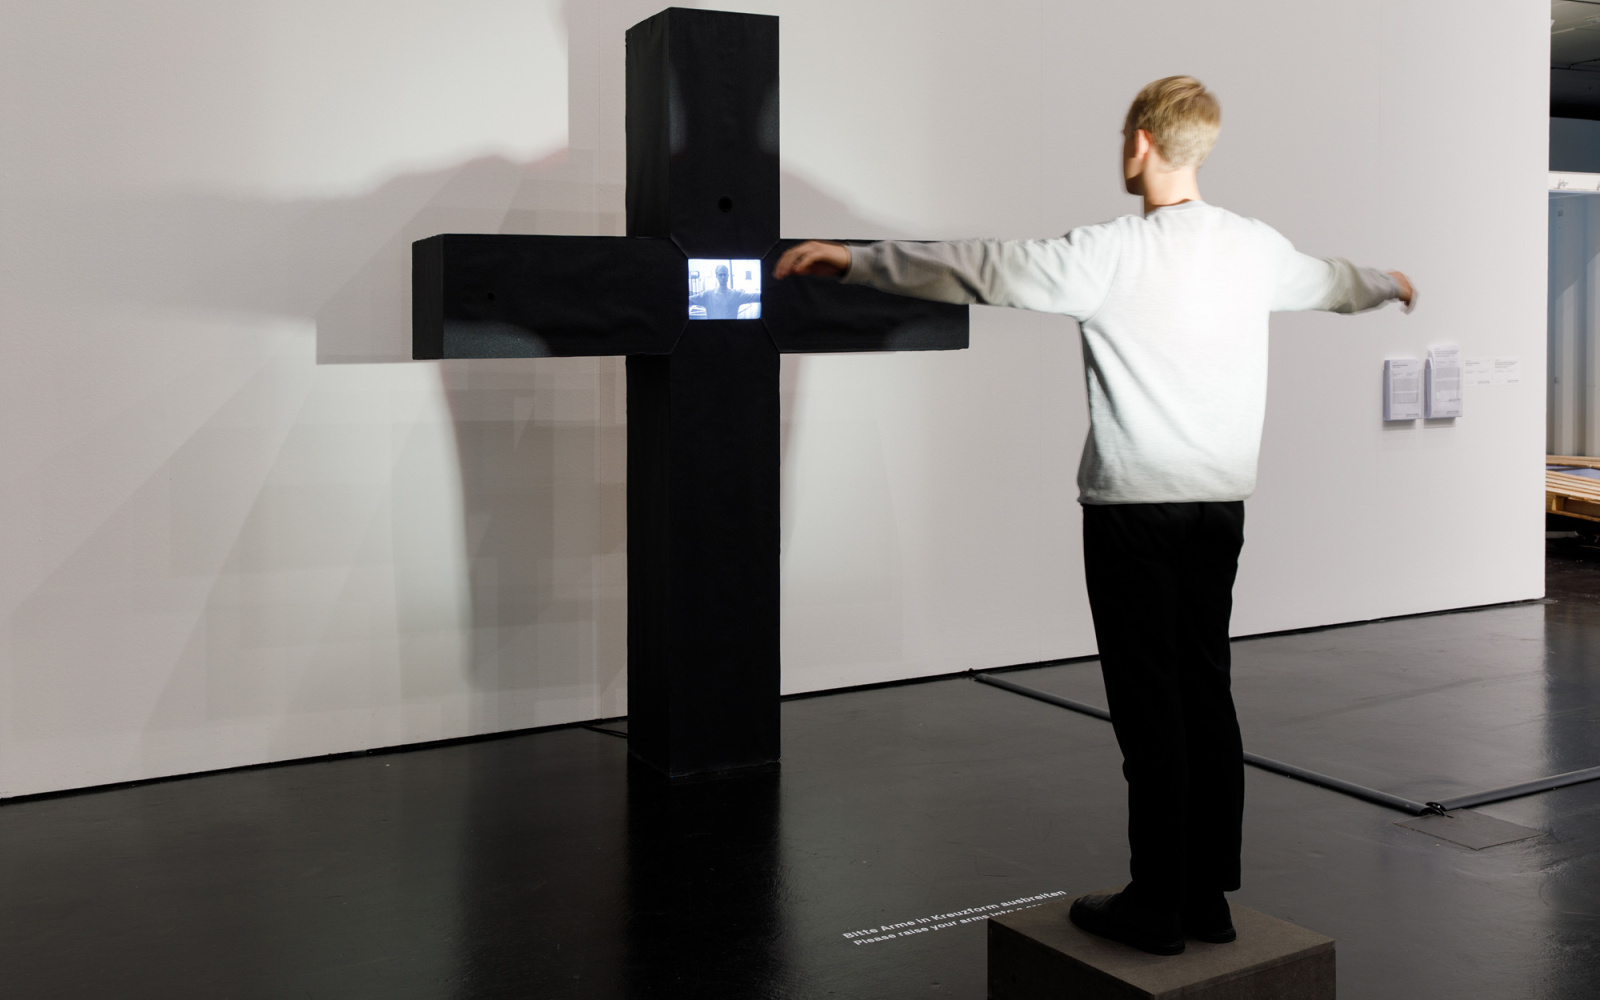 Peter Weibels interaktive Videoskultur: Ein schwarzes massives Kreuz. Dort wo sich die Streben des Kreuzes treffen, ist ein Monitor. Auf dem Monitor zu sehen ist die Person, die vor dem Kreuz steht und ihre Arme ausstreckt, als hinge sie selbst daran.